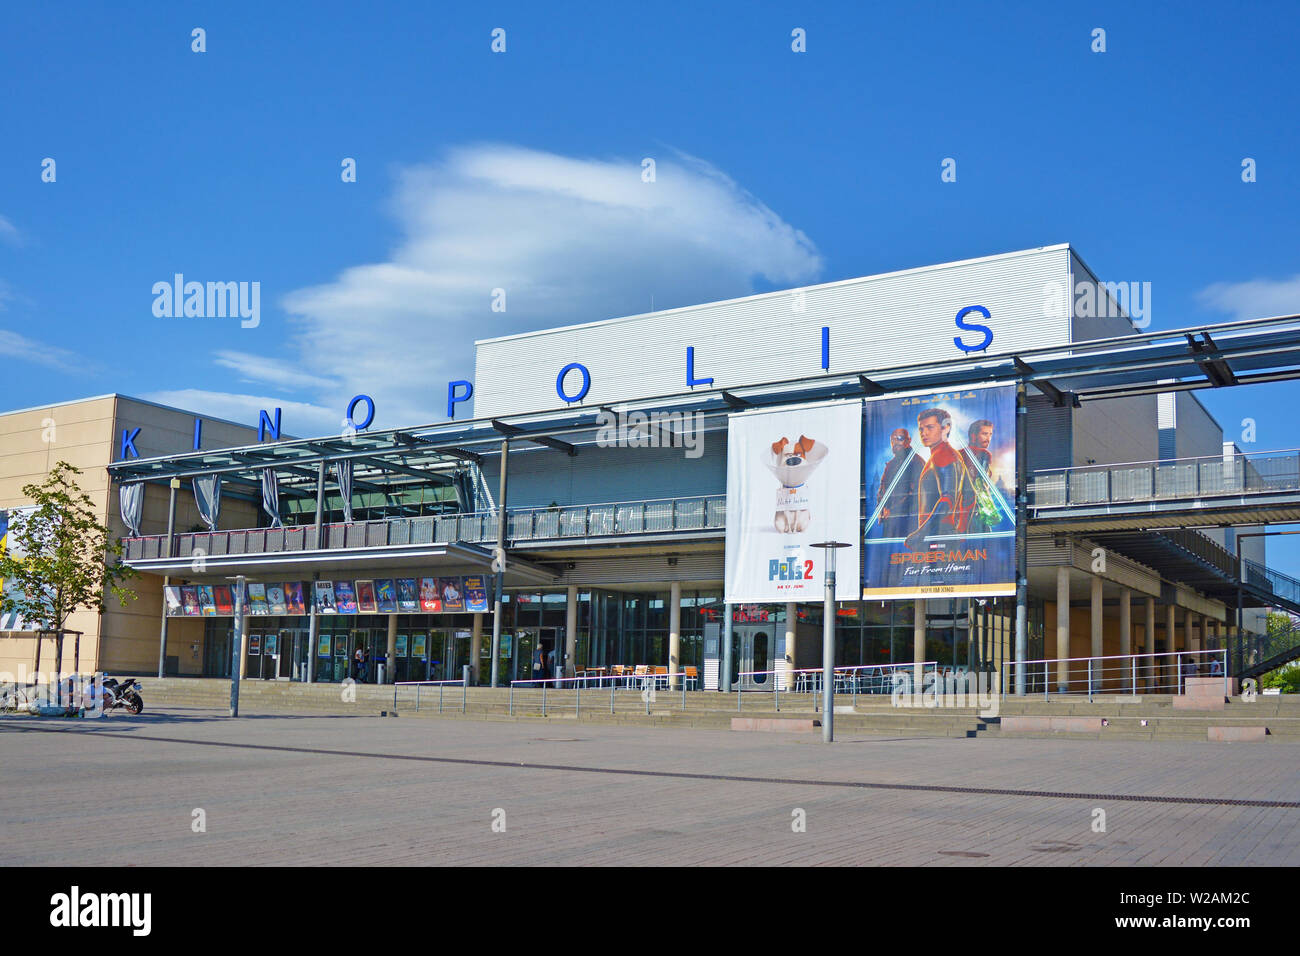 Viernheim, Deutschland - Juli 2019: Außerhalb der großen deutschen Kino Zweig namens "Kinopolis" mit Filmplakaten und großen Platz im Sommer Stockfoto